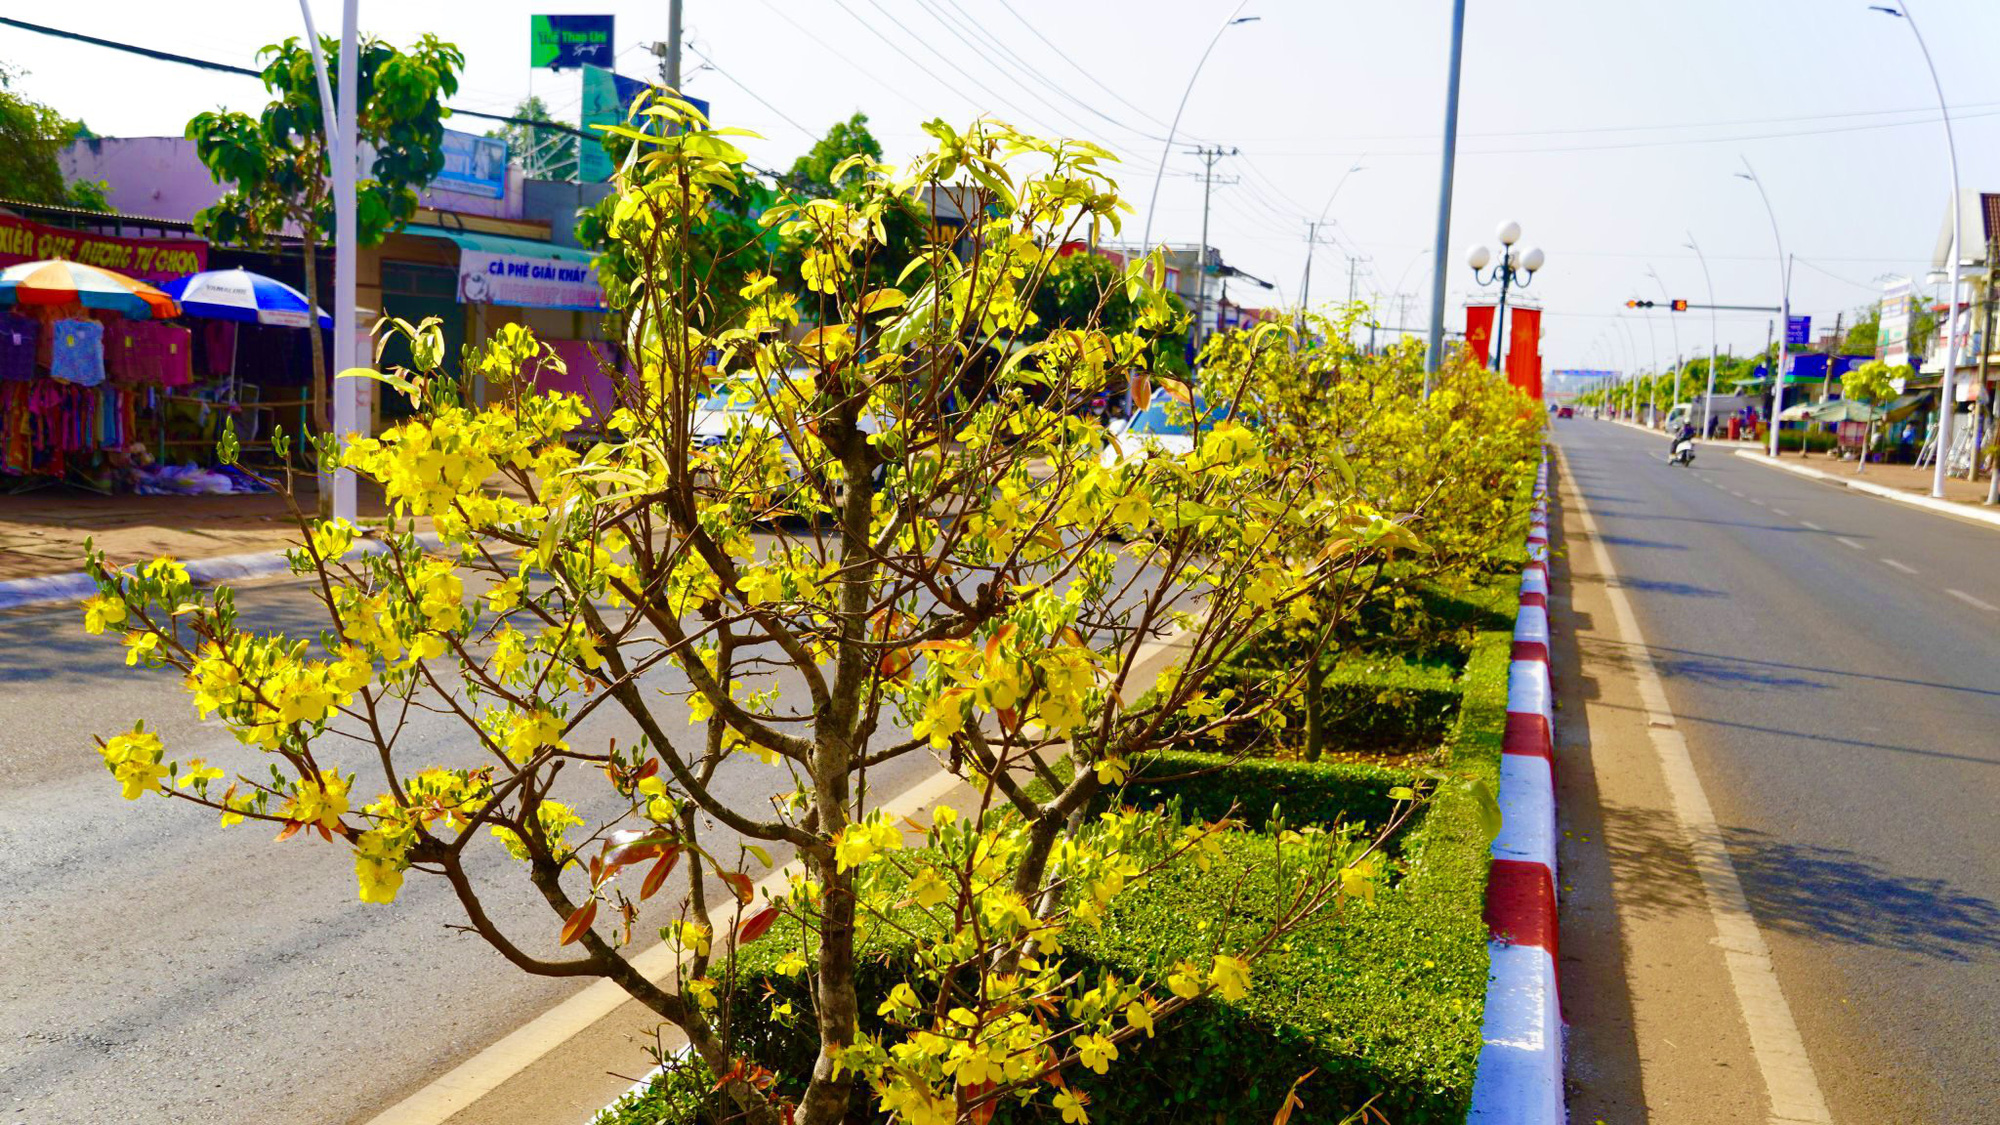 Tuyến đường hoa mai: Dạo bước trên Tuyến đường Hoa Mai là một trải nghiệm tuyệt vời trong mùa xuân. Cả một con đường được trang trí đầy màu sắc với những cành Mai đang nở rộ, tạo nên một không gian vô cùng thơ mộng và tuyệt đẹp.